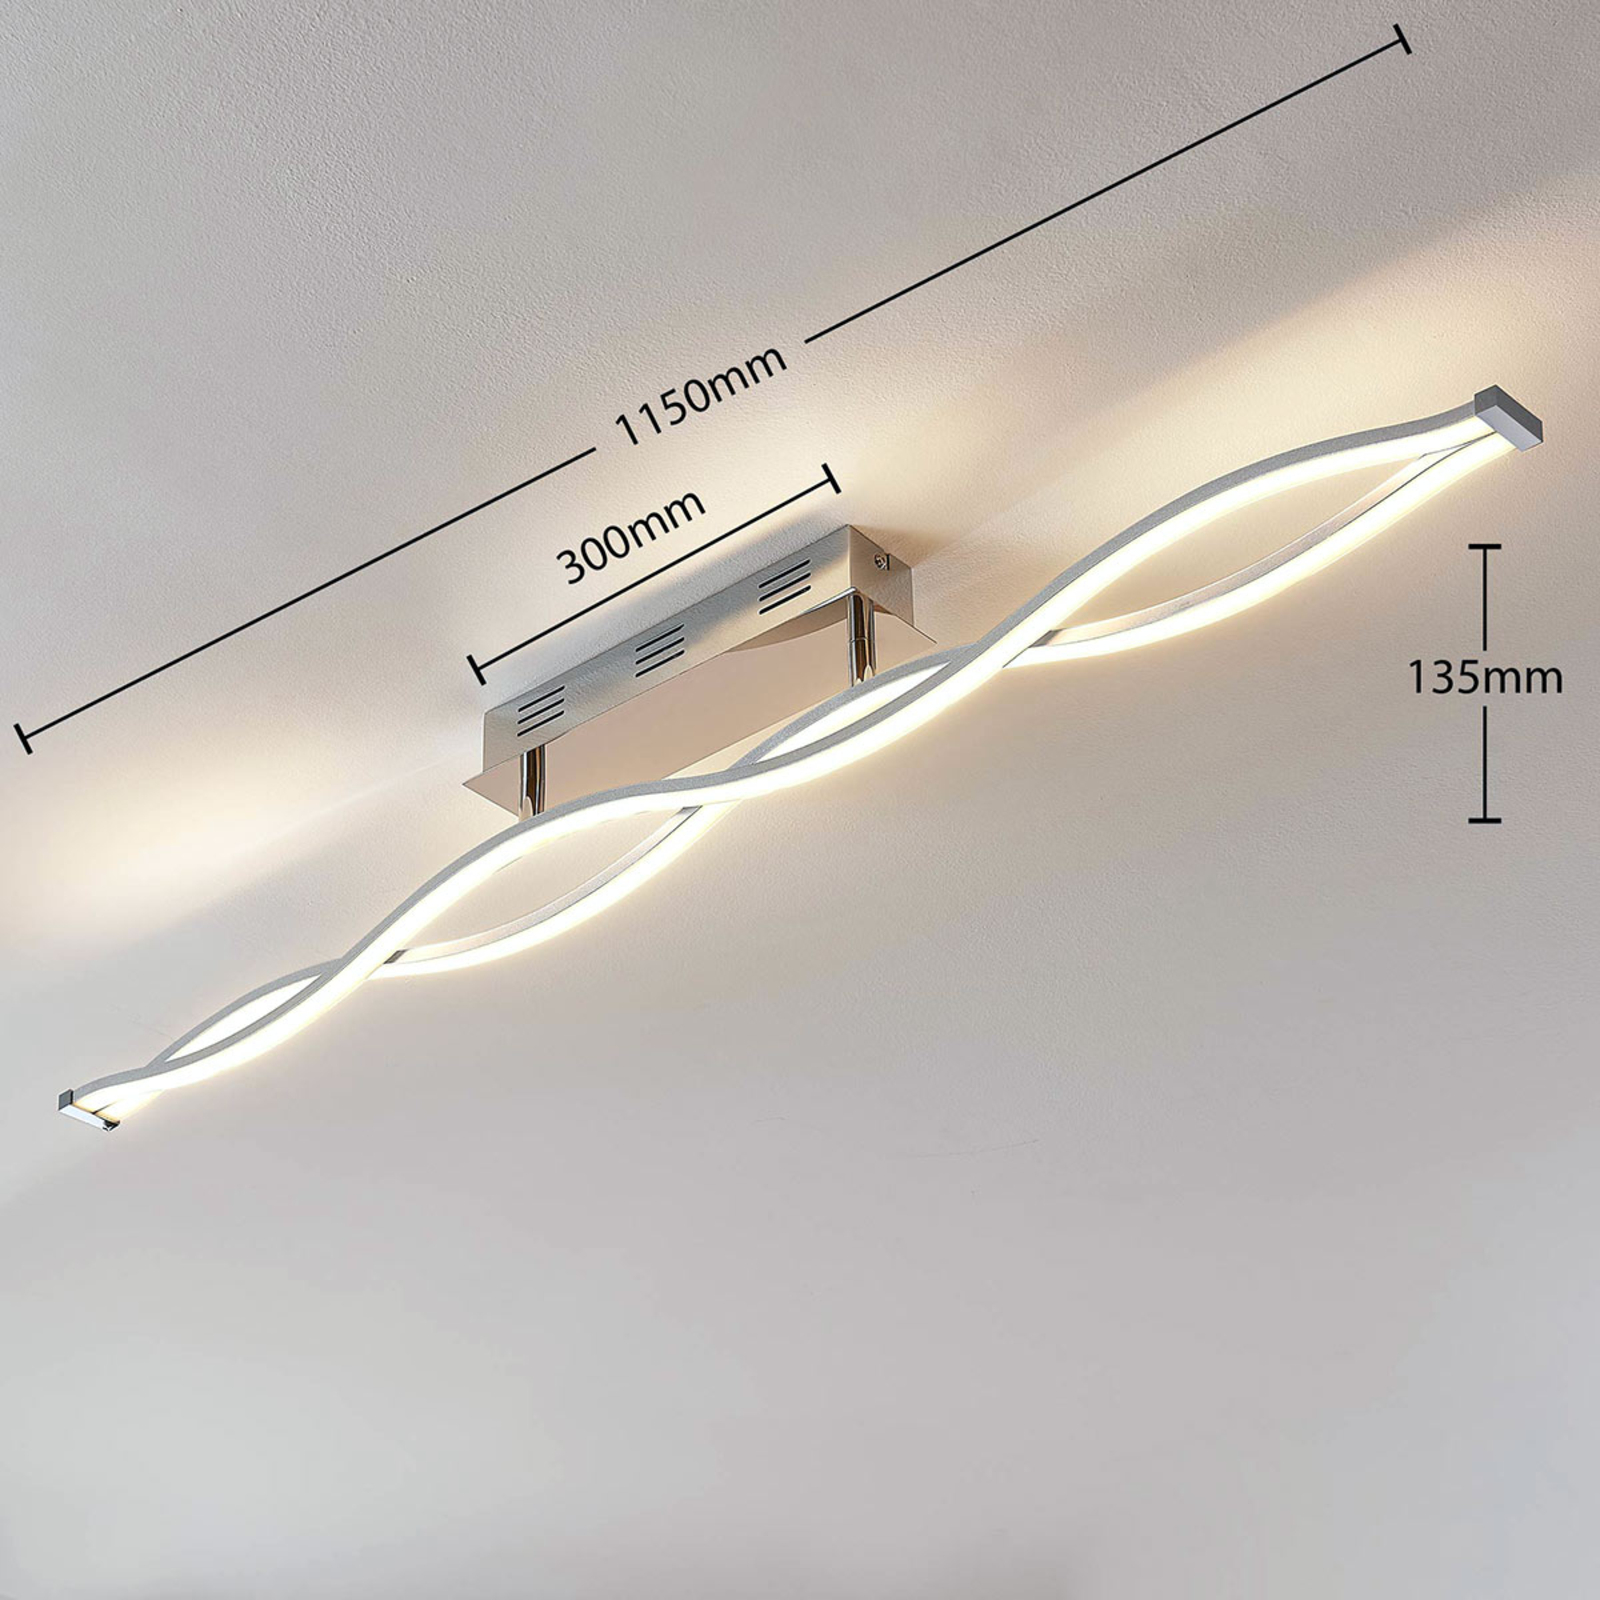 LED-taklampan Roan, vågformad